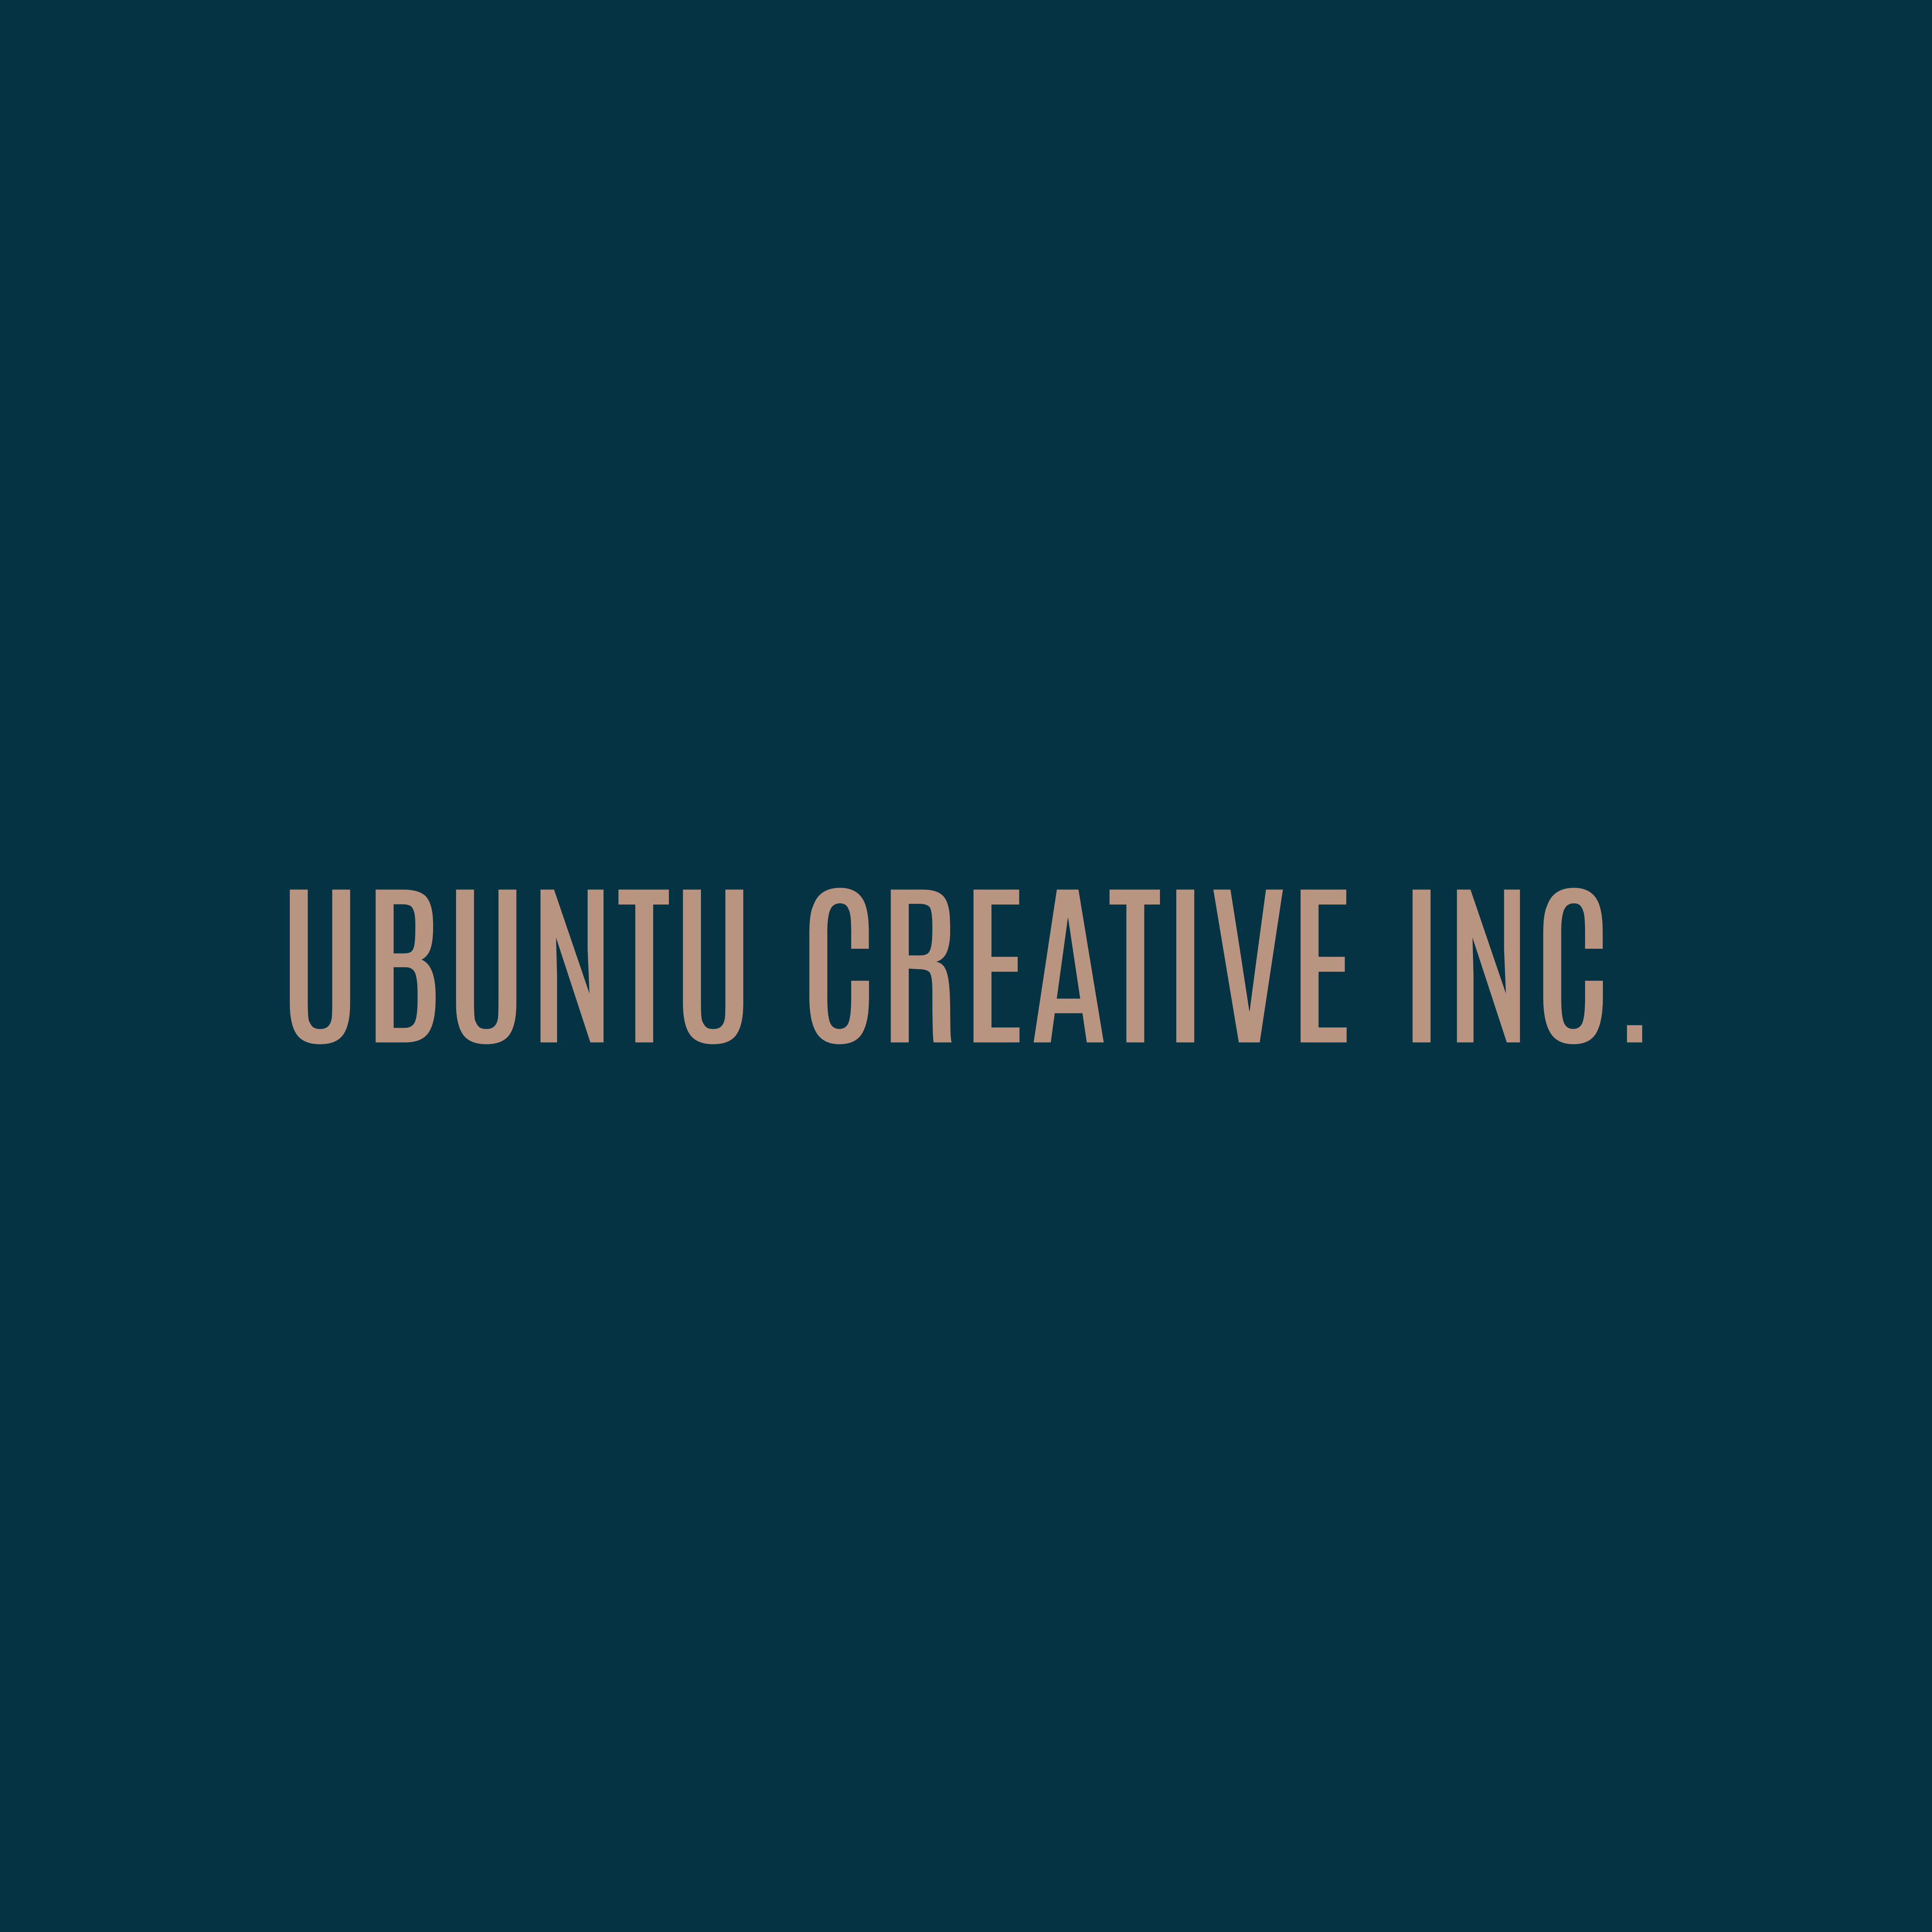 Ubuntu Creative Inc.